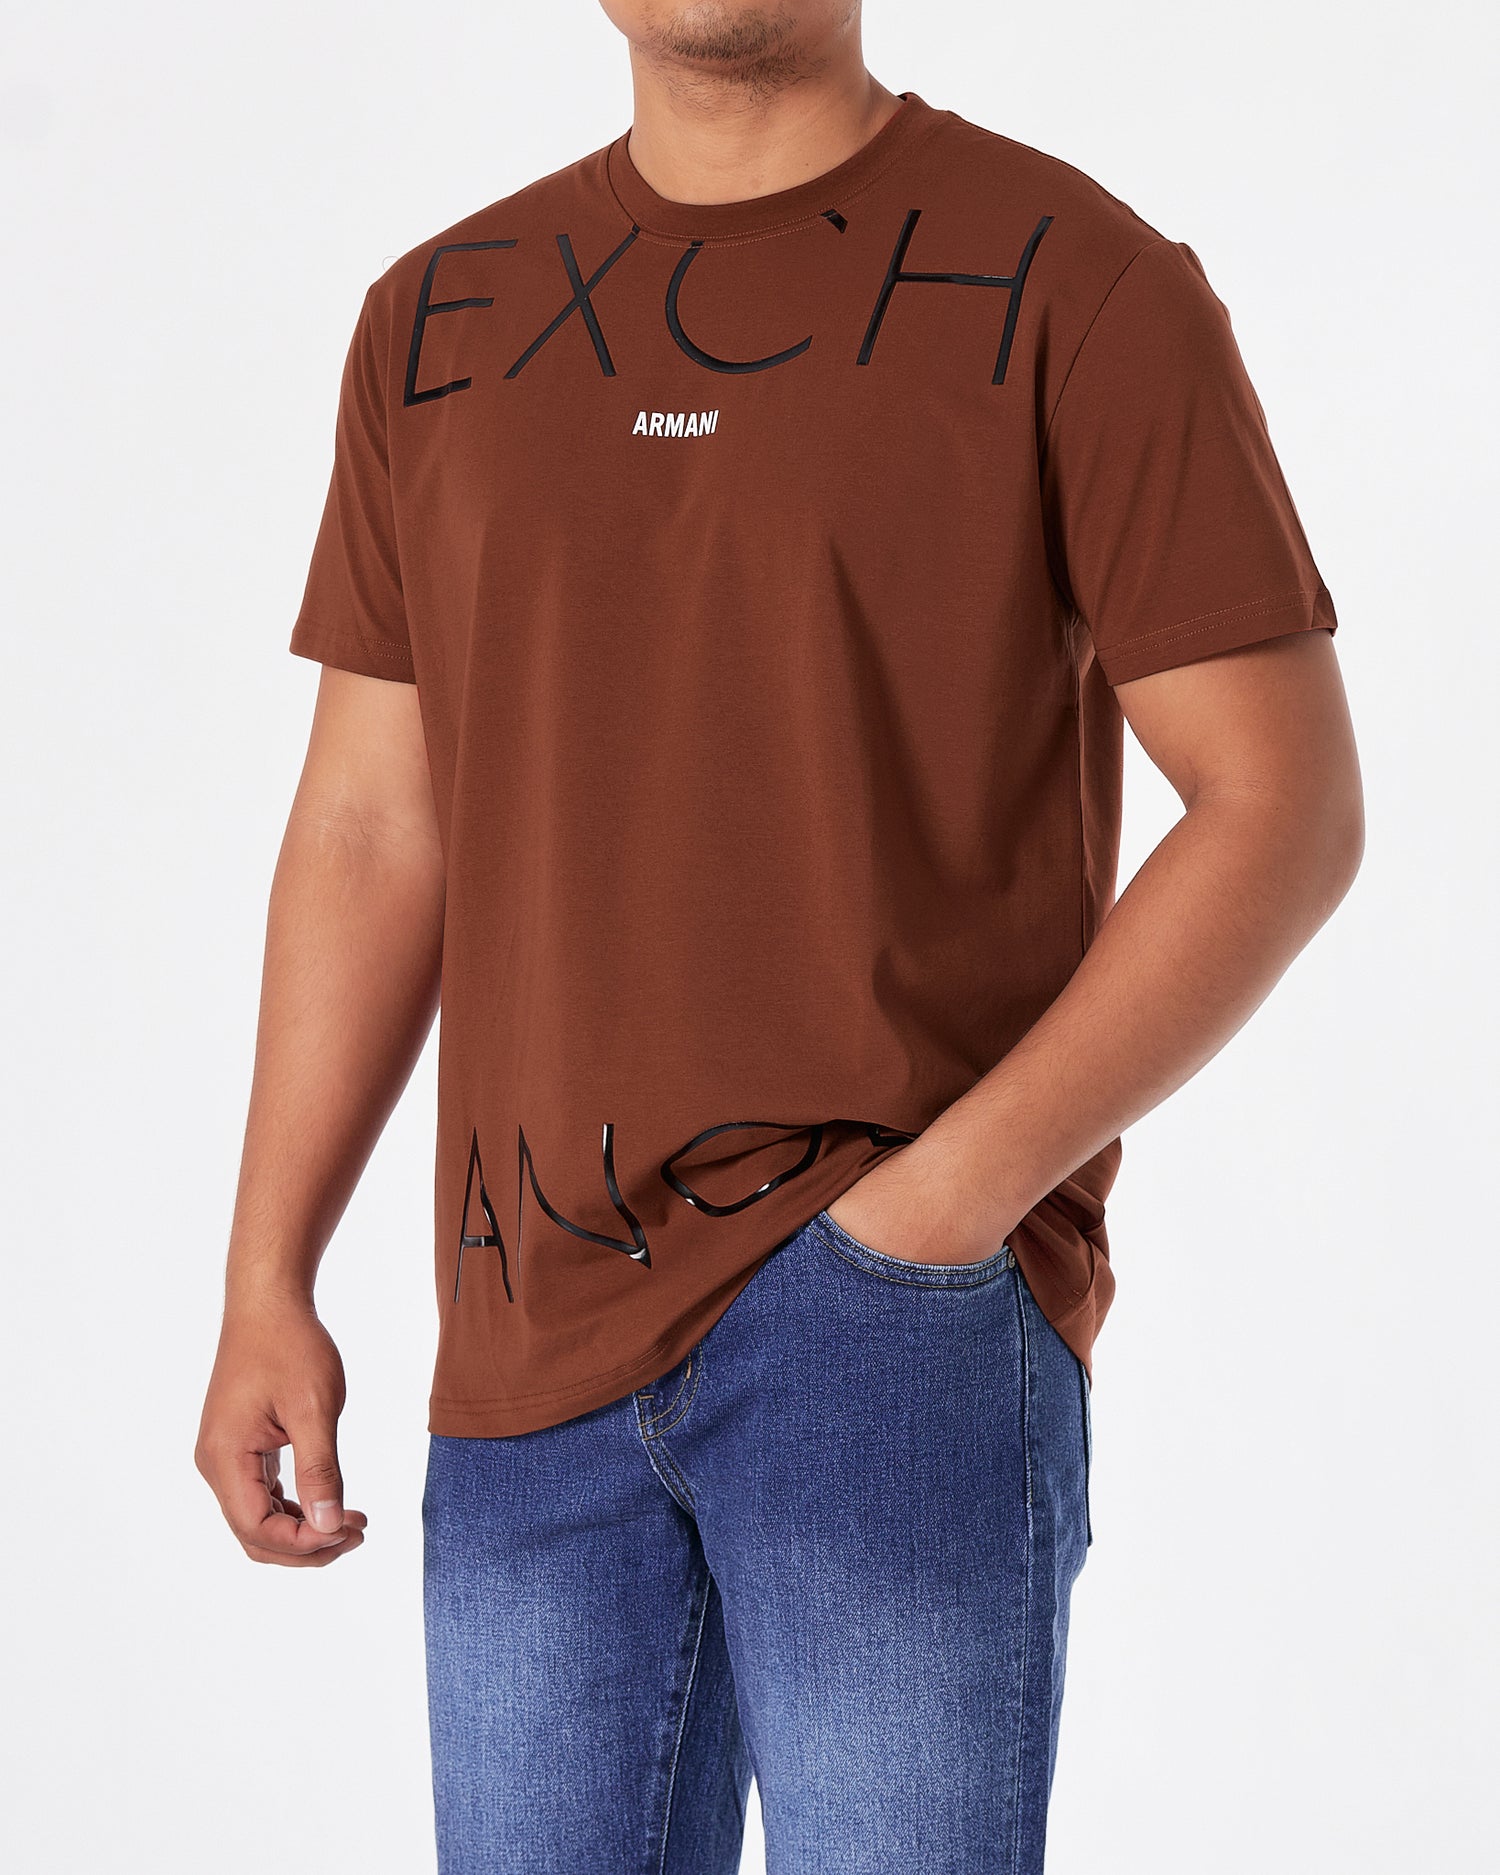 ARM Exchange Logo Printed Men Red T-Shirt 15.90